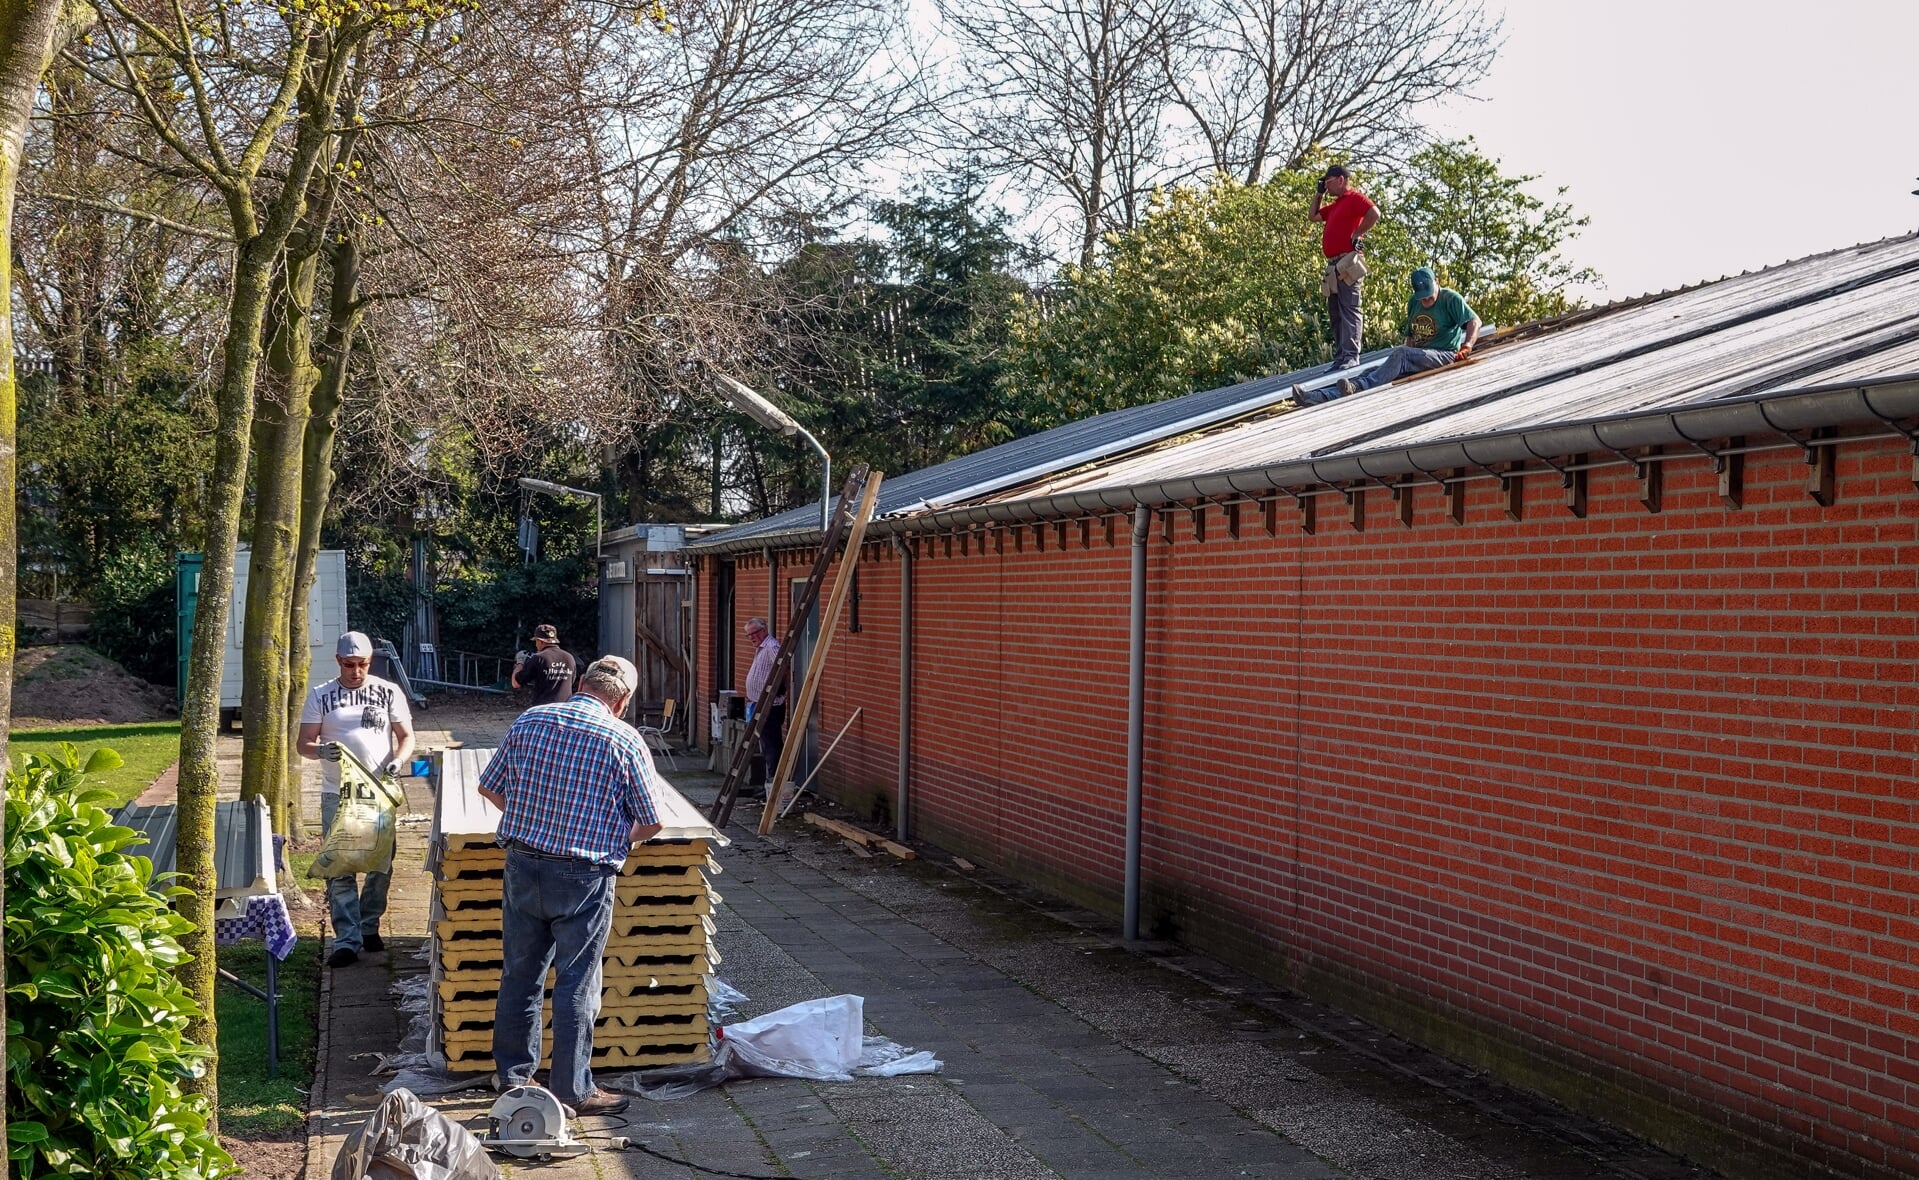 Leden van L'Union Liempde zijn in touw om het dak van de handboogdoelen aan de Heidezoom te vervangen. Storm Dennis veroorzaakte in februari grote schade aan de dakplaten. 